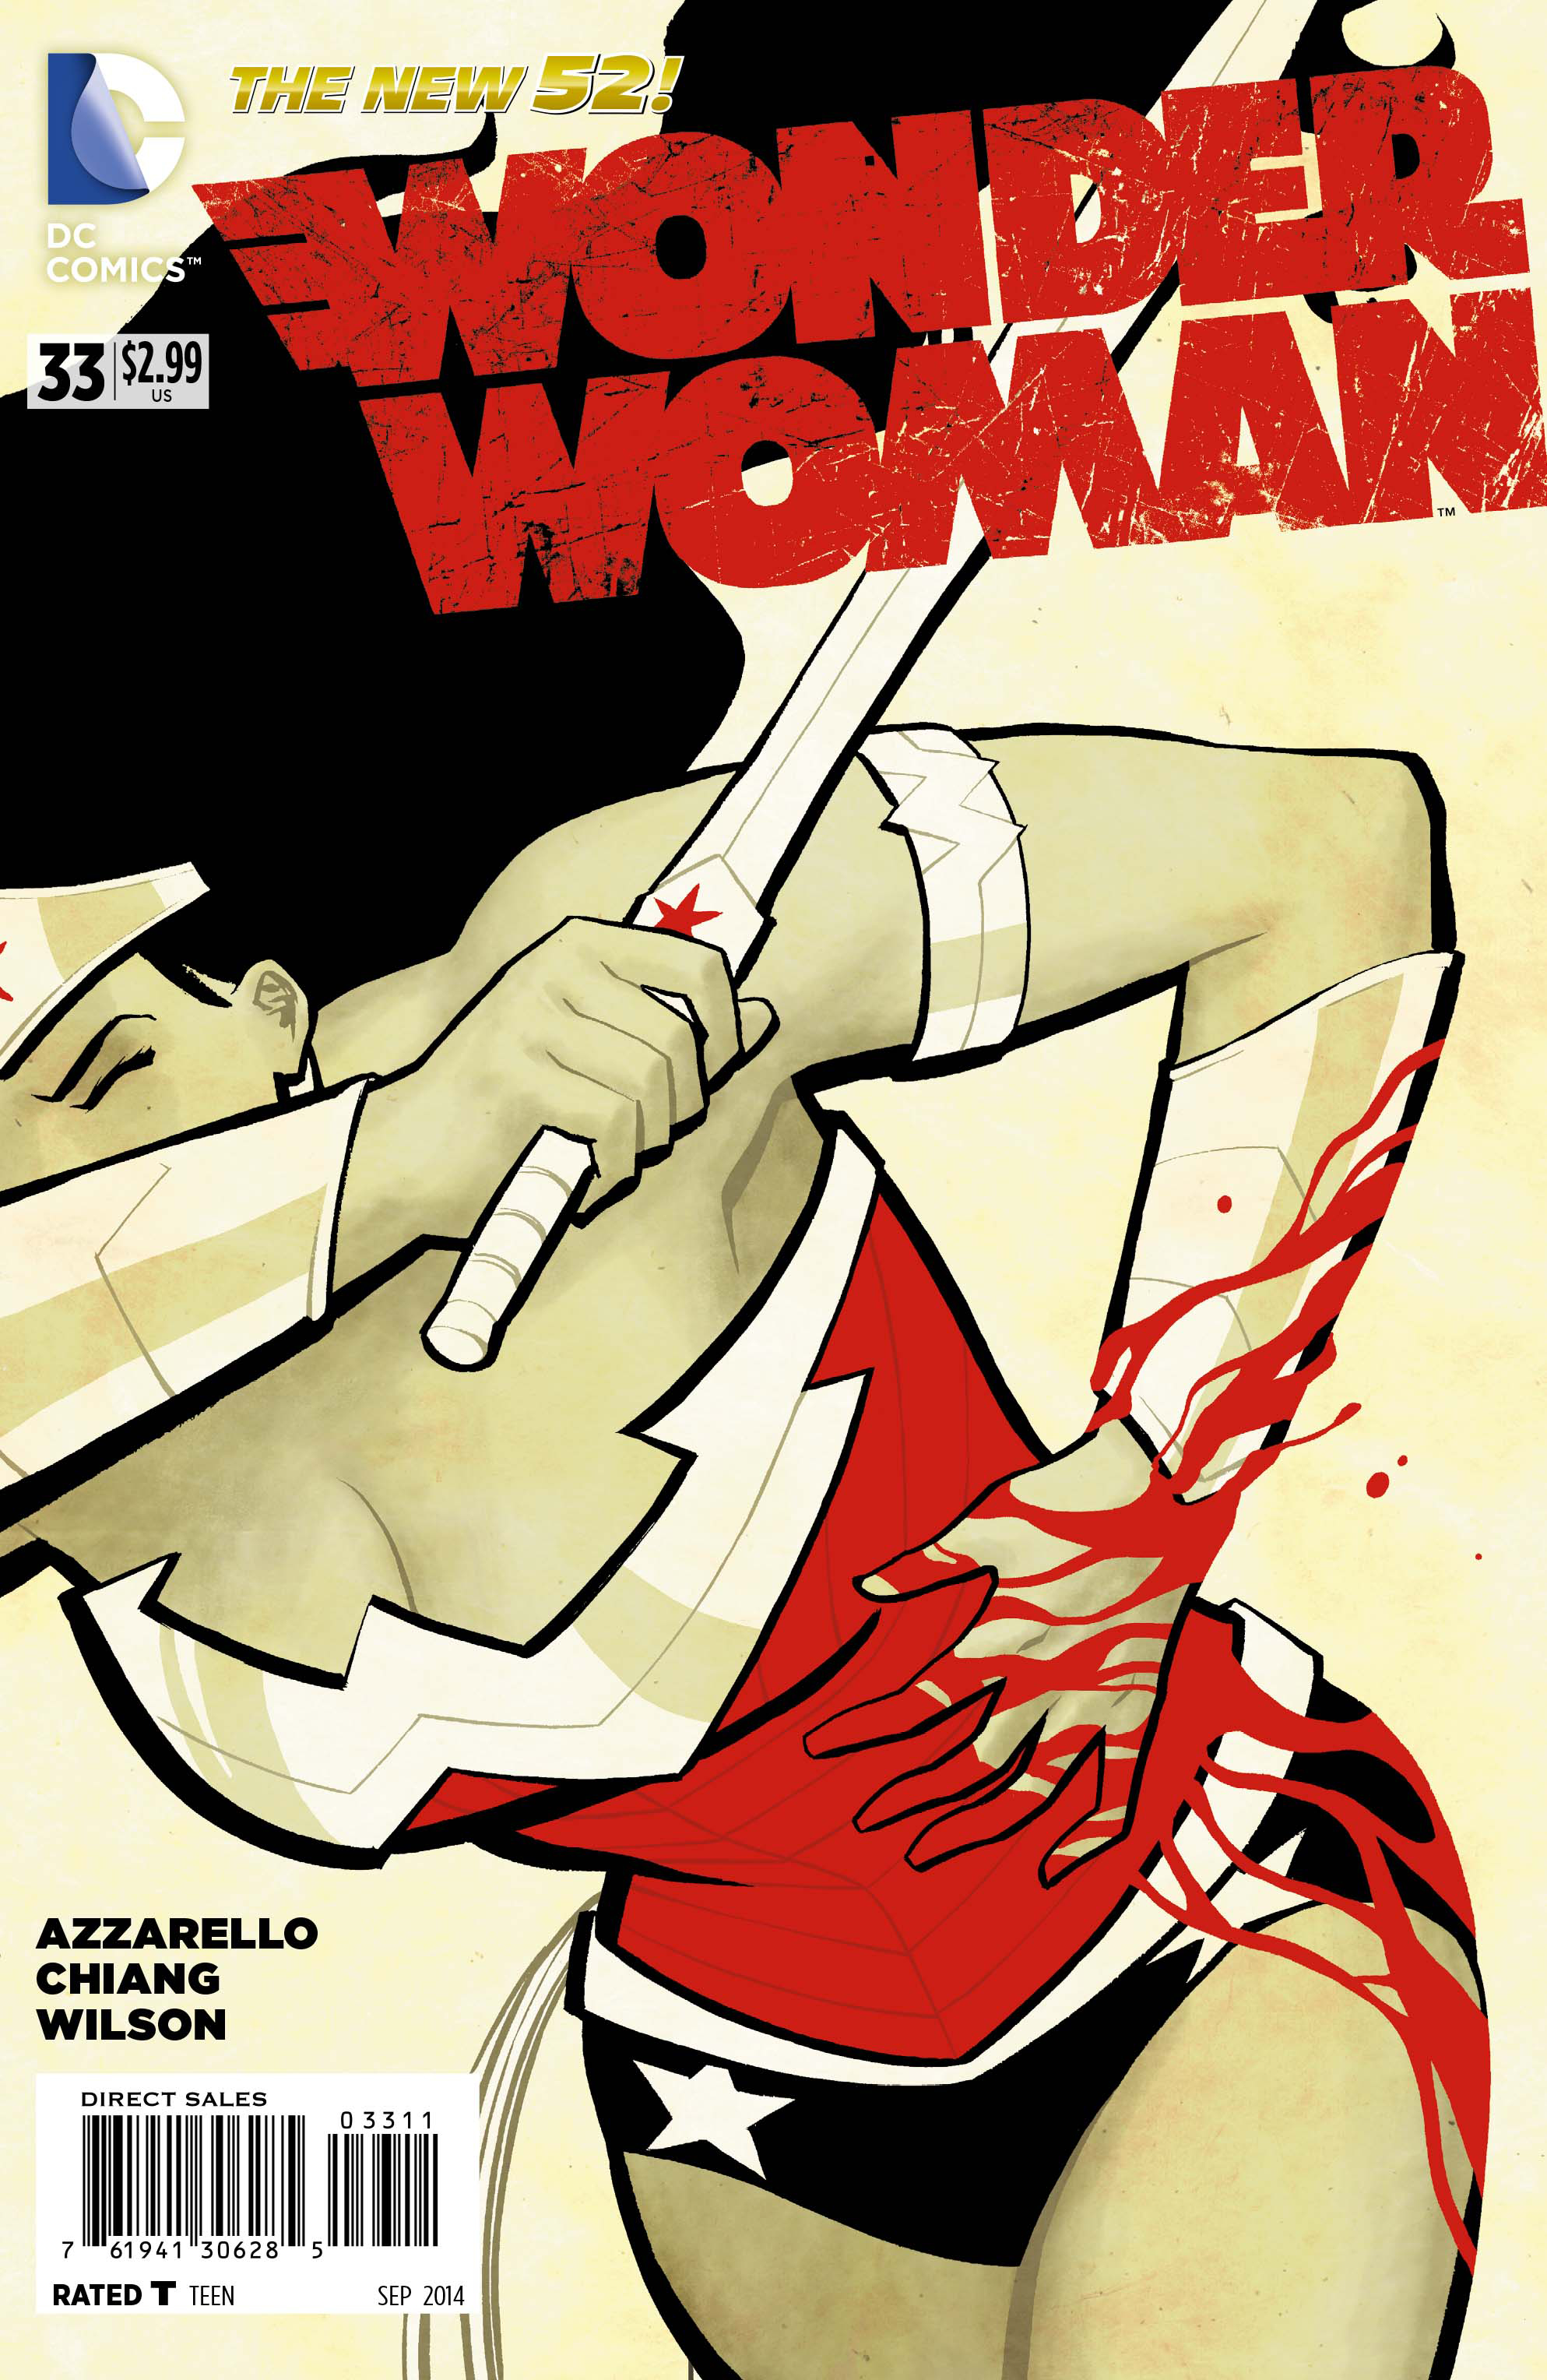 Wonder woman rule 33